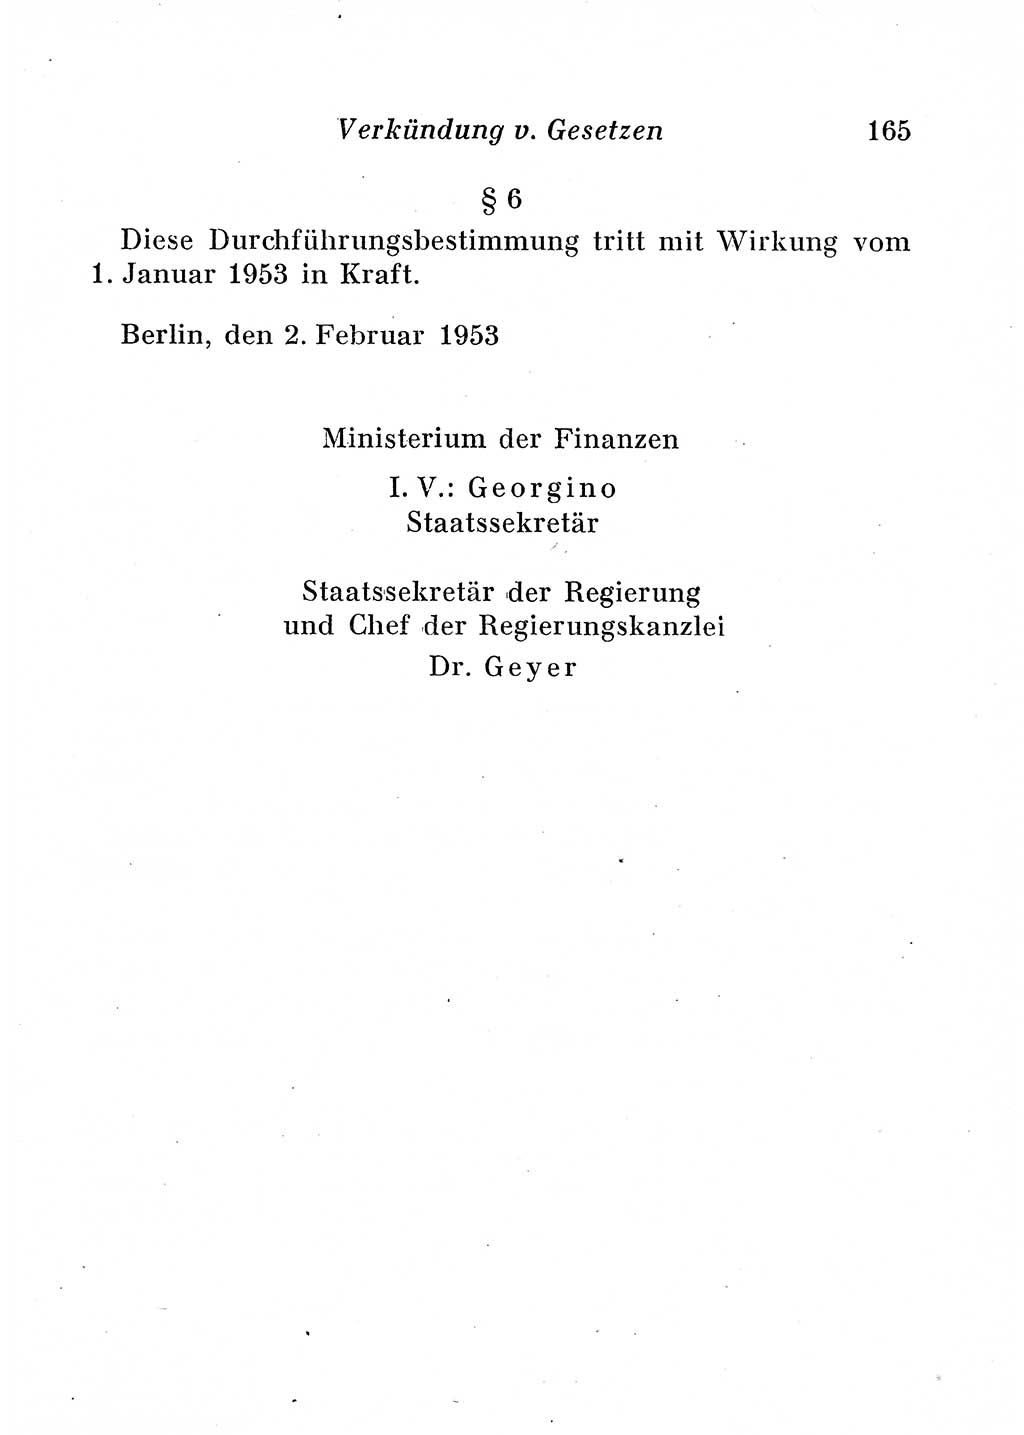 Staats- und verwaltungsrechtliche Gesetze der Deutschen Demokratischen Republik (DDR) 1958, Seite 165 (StVerwR Ges. DDR 1958, S. 165)